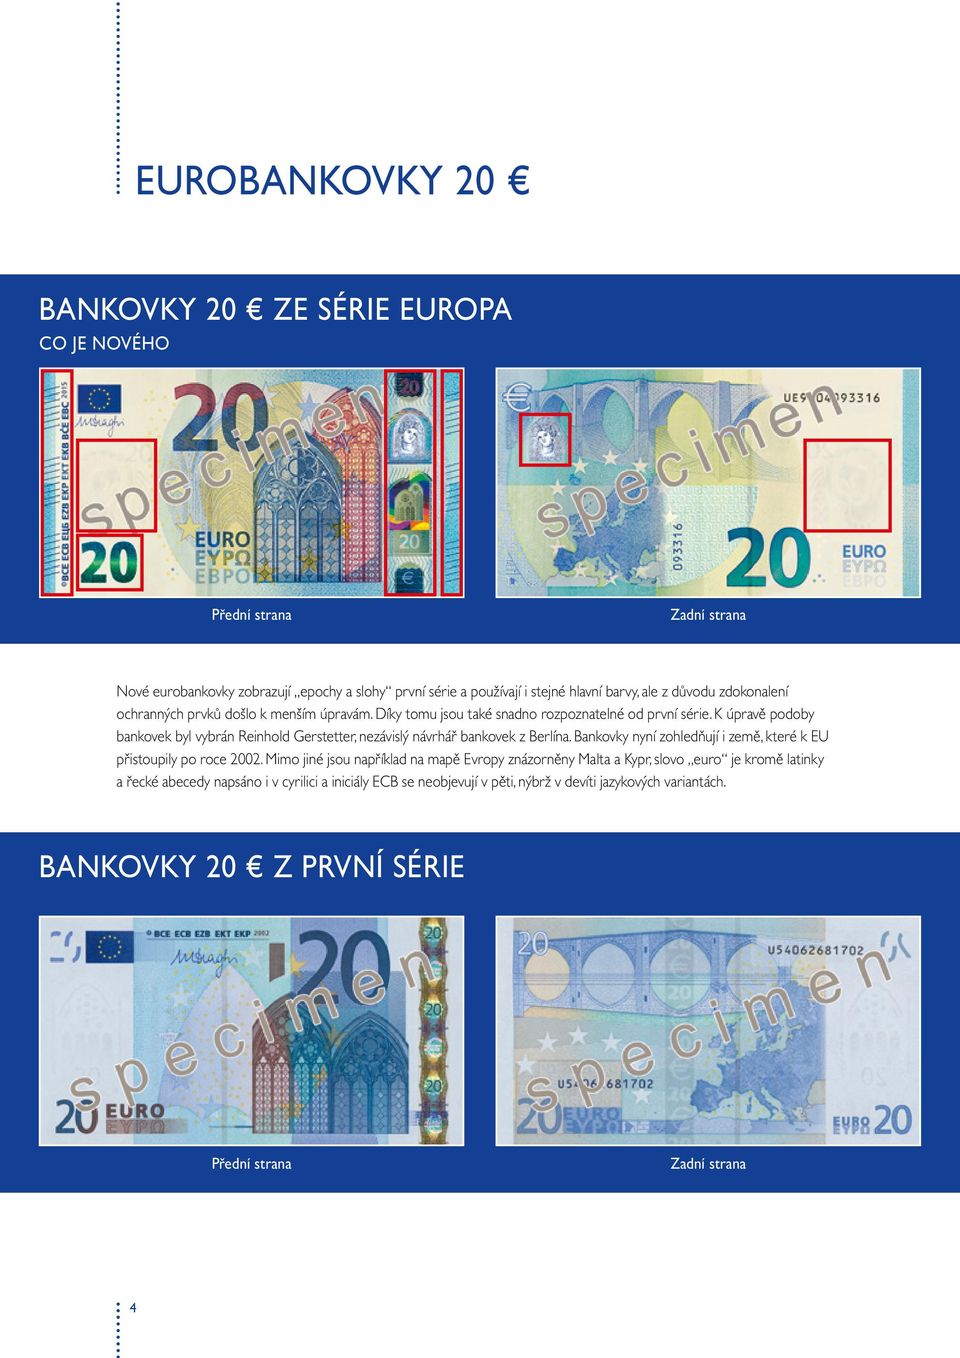 K úpravě podoby bankovek byl vybrán Reinhold Gerstetter, nezávislý návrhář bankovek z Berlína. Bankovky nyní zohledňují i země, které k EU přistoupily po roce 02.